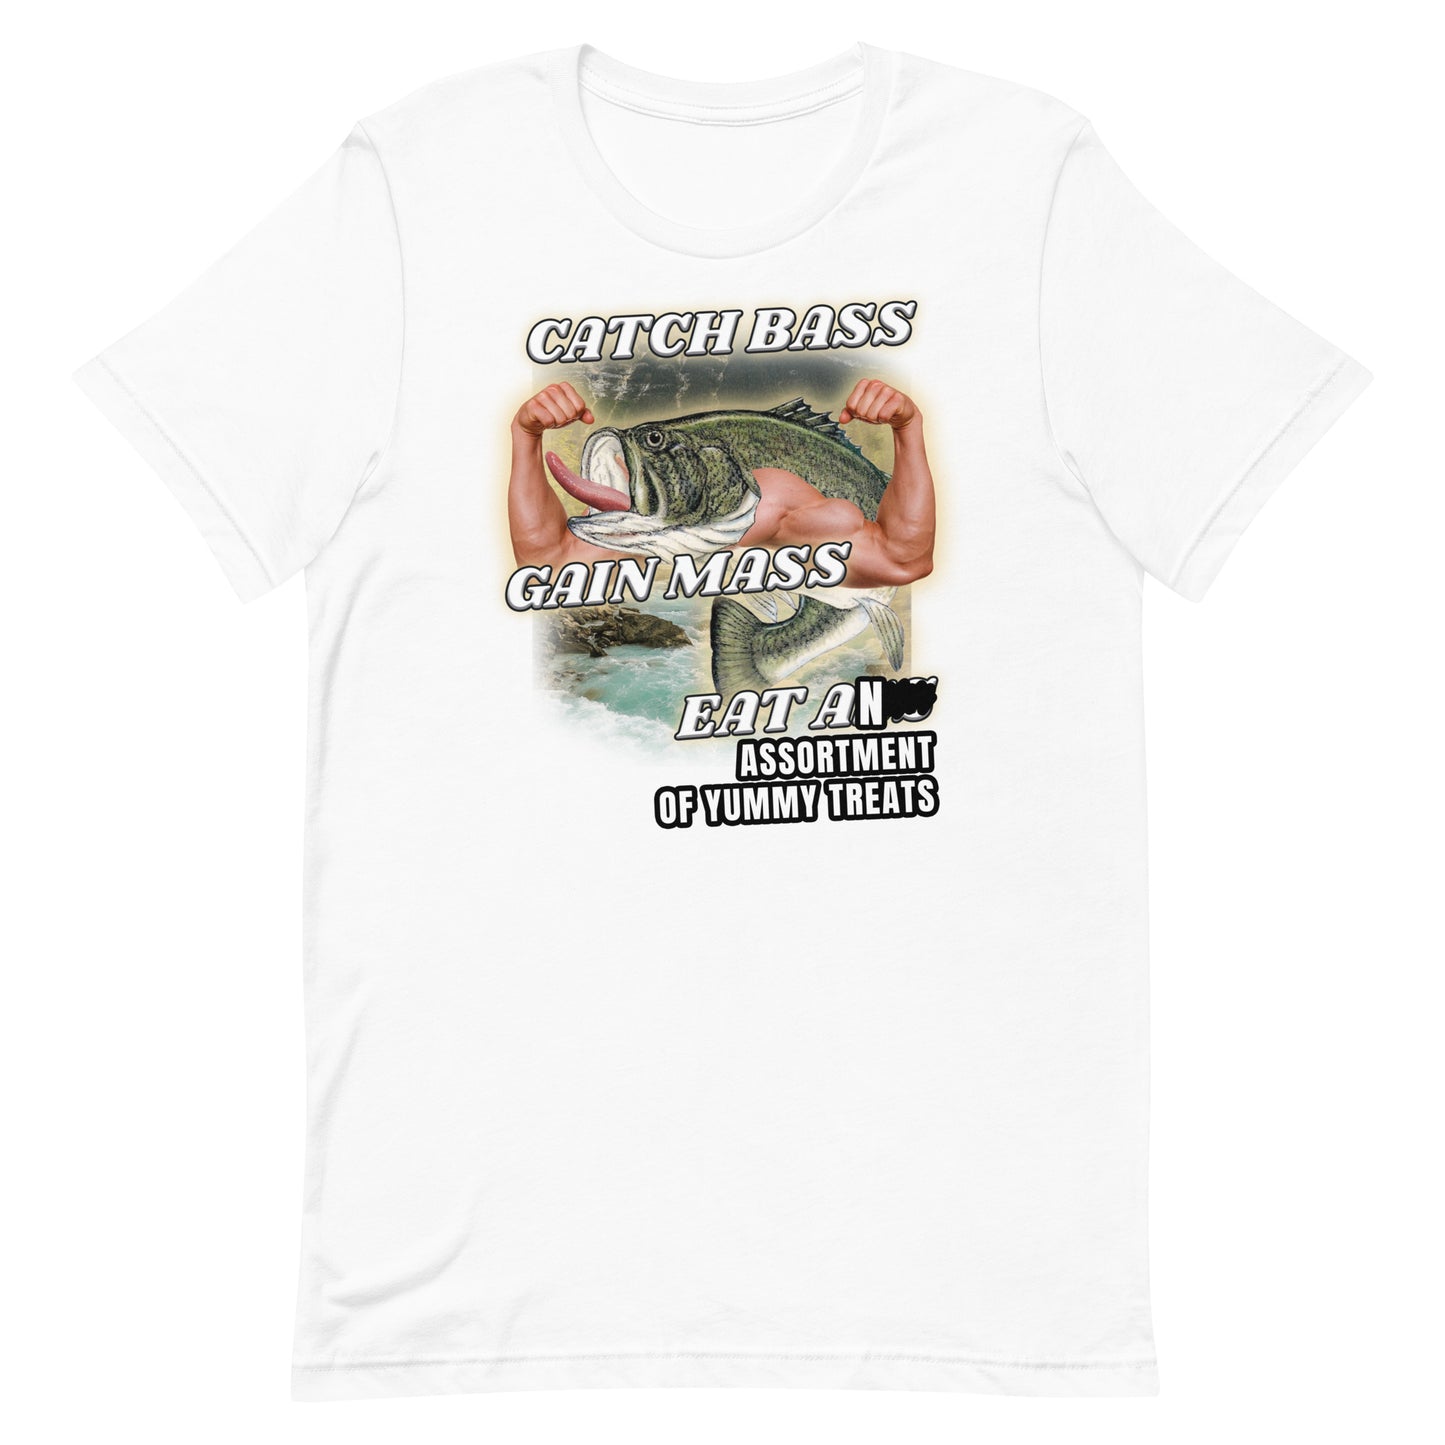 Catch Bass Gain Mass Eat [TREATS] Unisex t-shirt